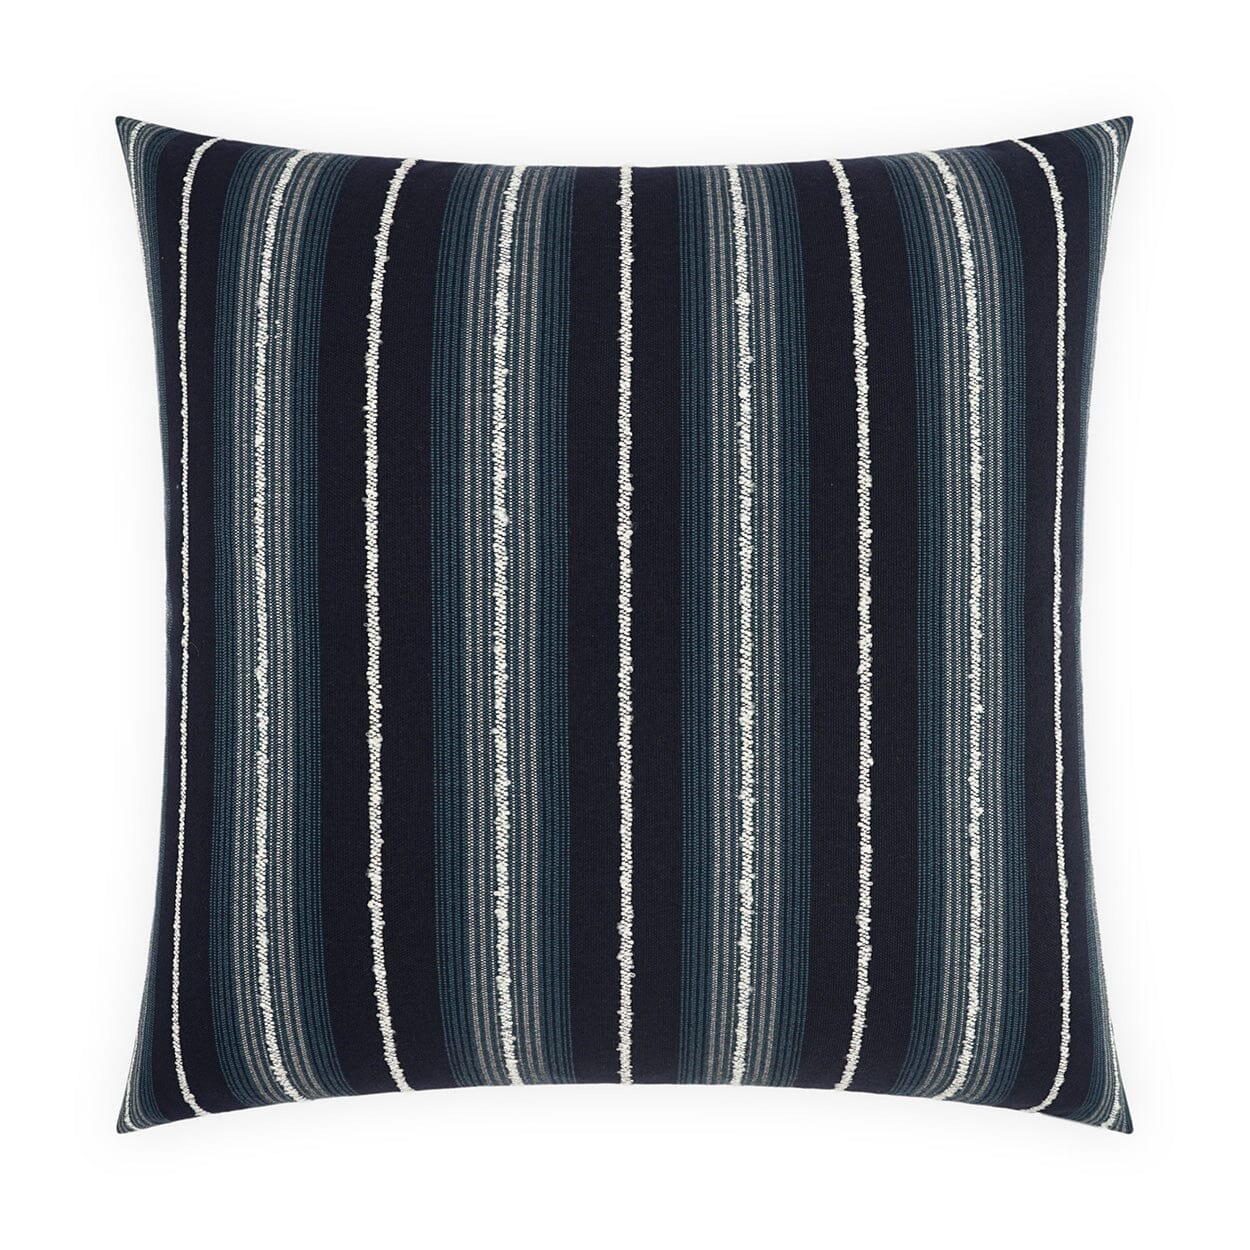 D.V. Kap 22" x 22" Outdoor Throw Pillow | Sunkist Blue Pillows D.V Kap Home